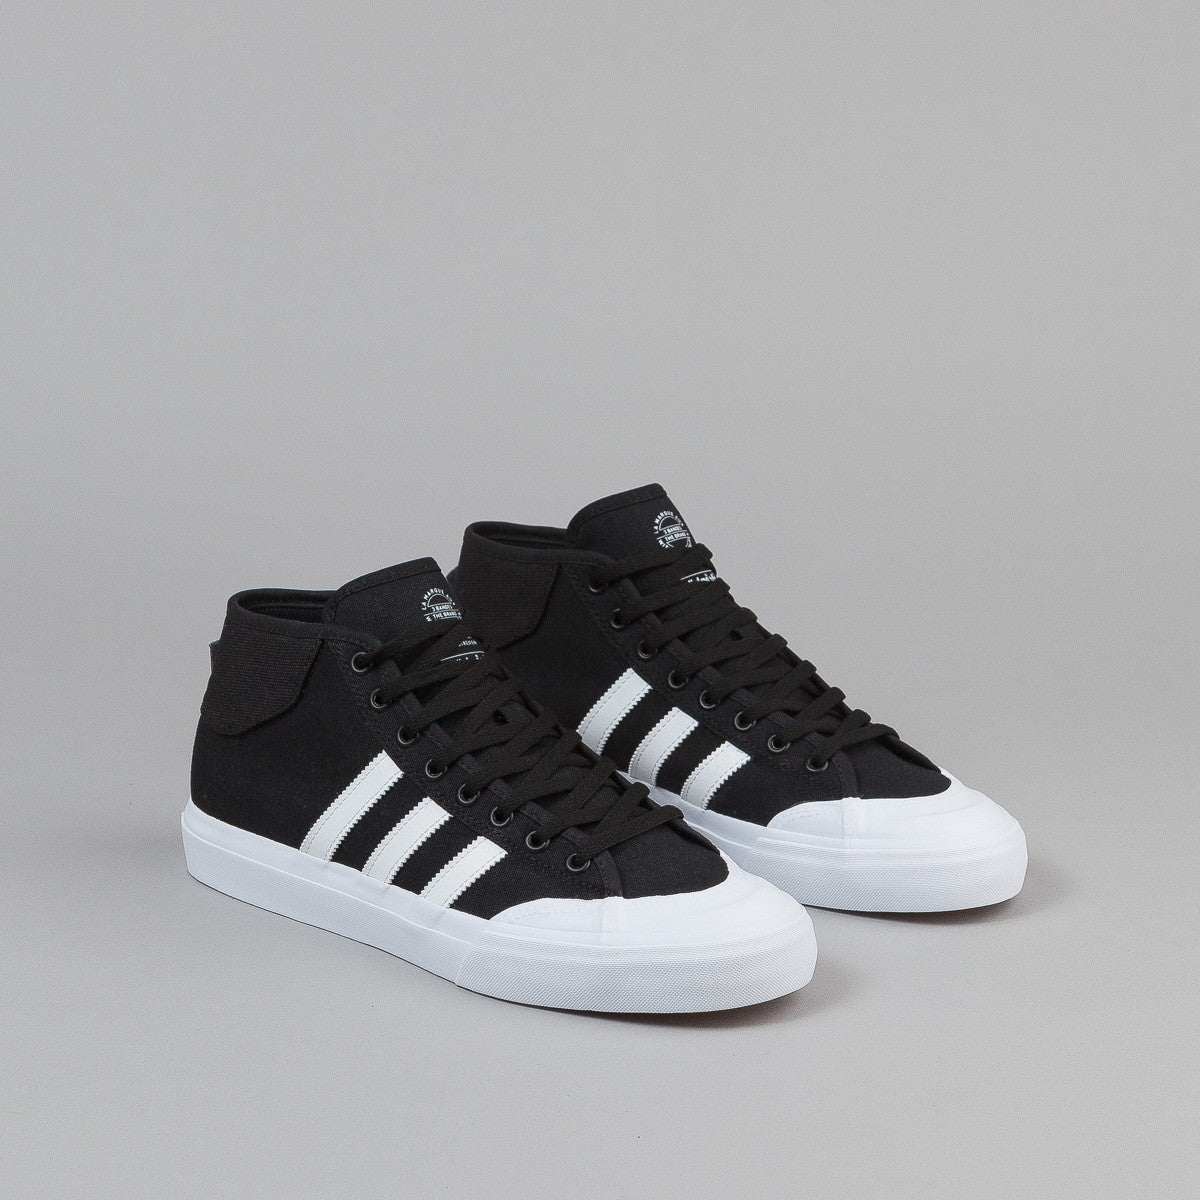 Adidas Matchcourt Mid Shoes - Core Black / FTW White / FTW White | Flatspot